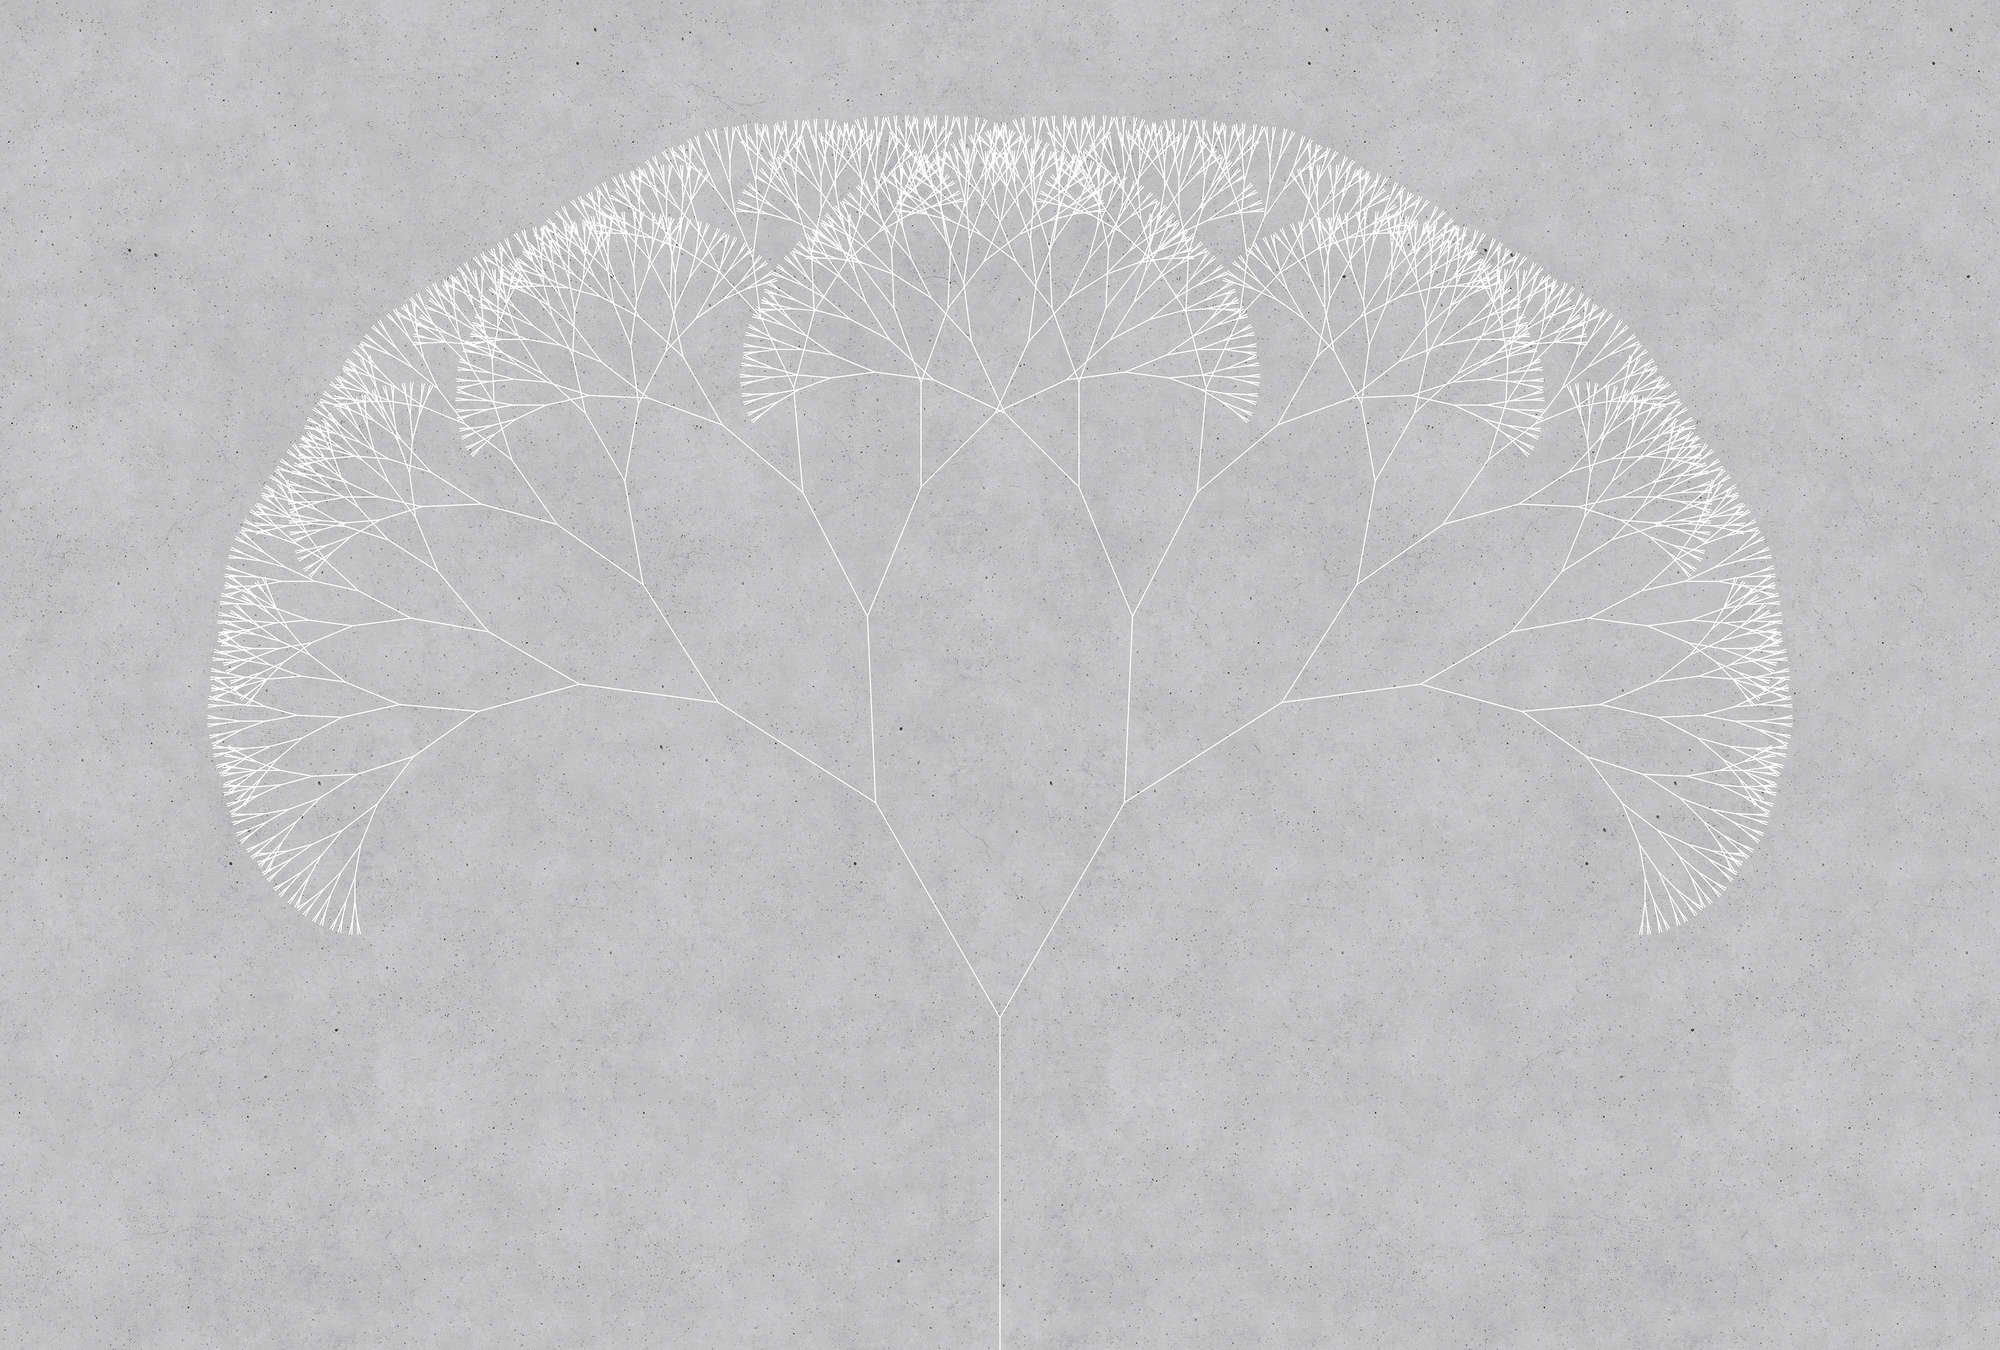             Dandelion Tree Behang - Grijs, Wit
        